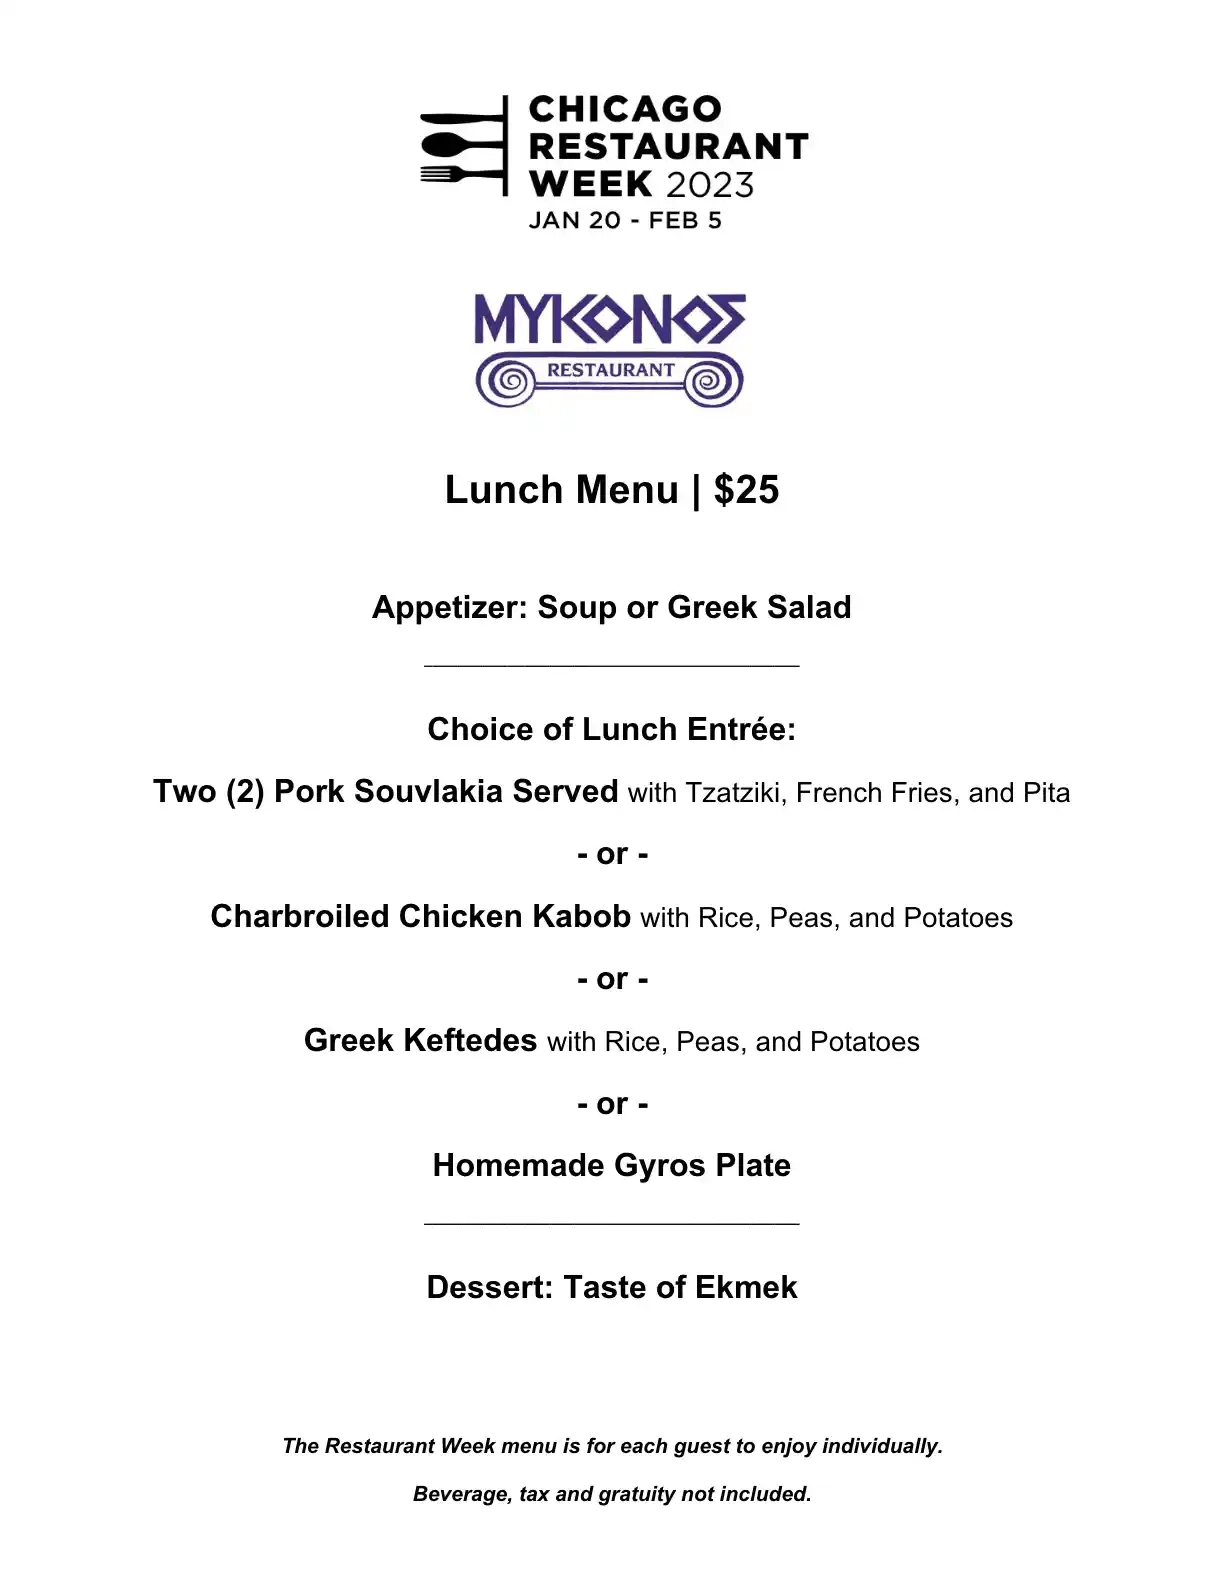 Chicago Restaurant Week 2023 Menu Mykonos Lunch